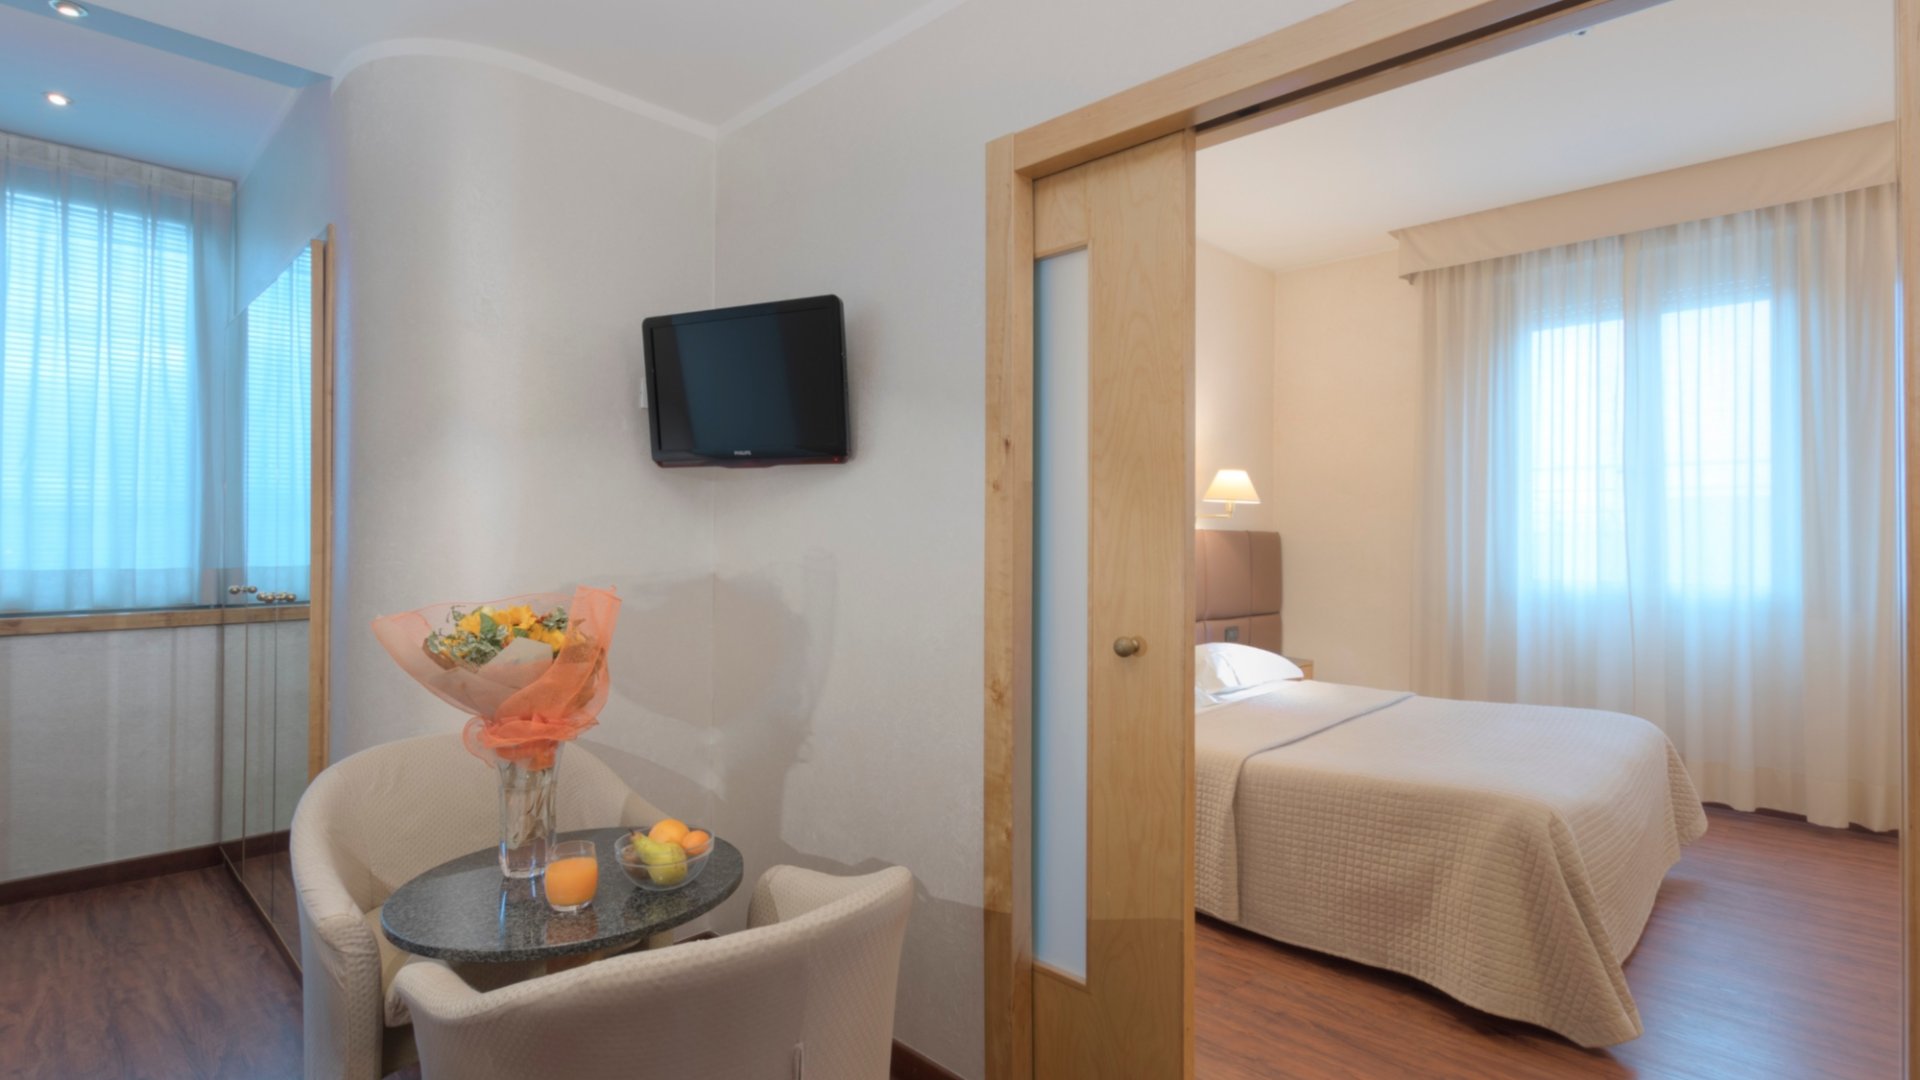 Tre notti nella junior suite dell'Hotel Minerva, un elegante hotel quattro stelle ad Arezzo